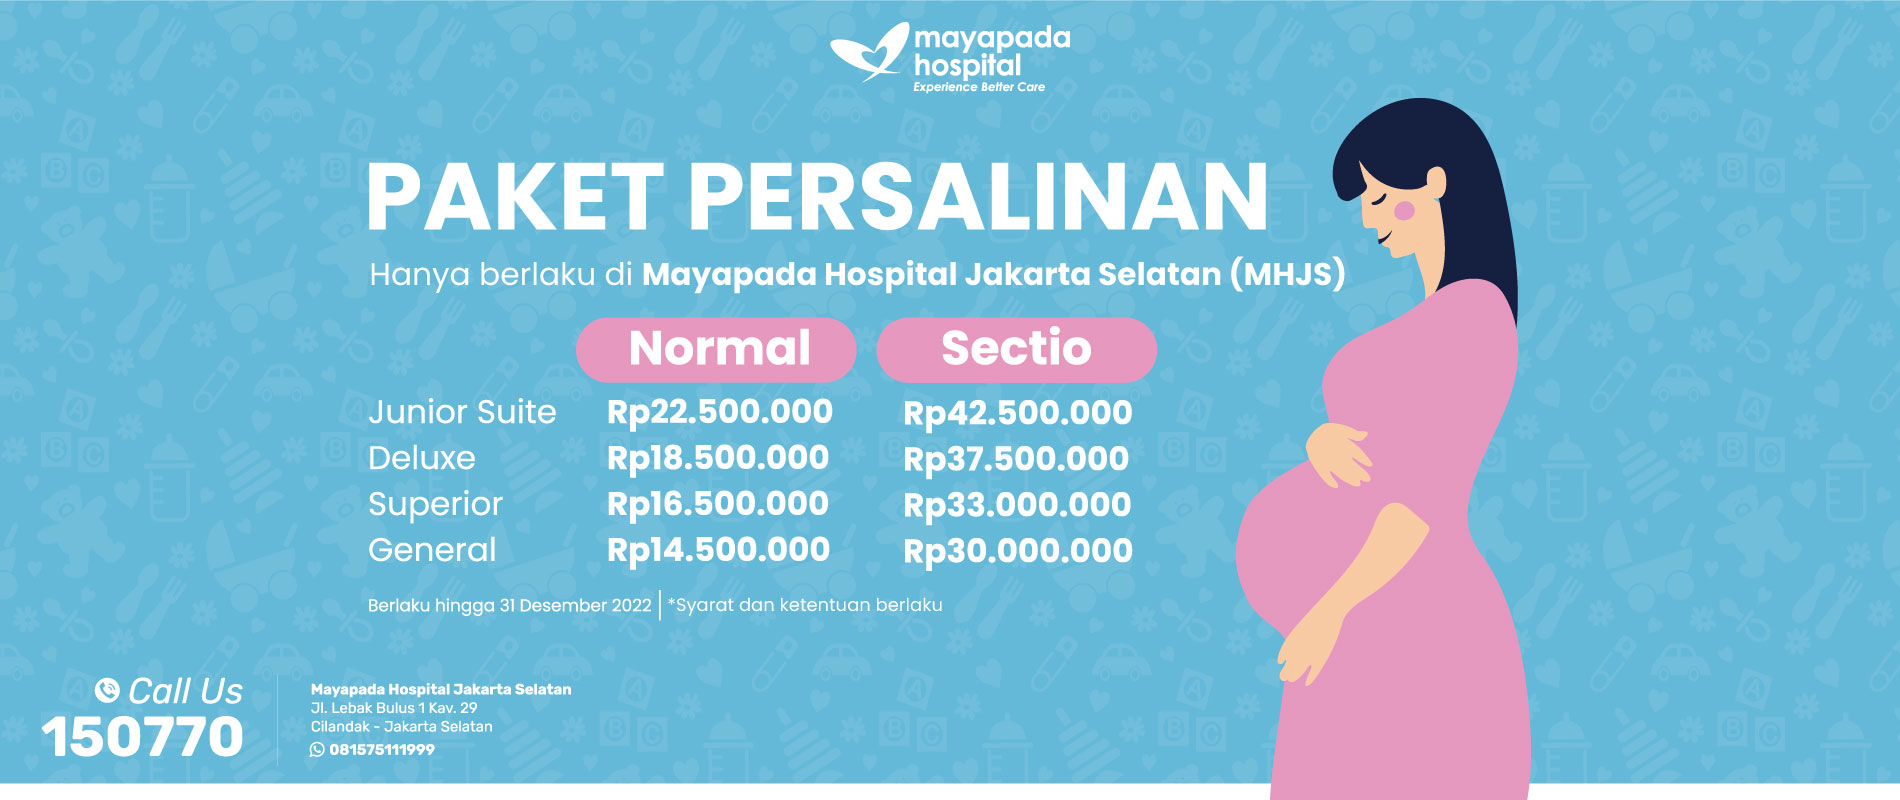 Paket Persalinan di Mayapada Hospital Jakarta Selatan (MHJS) IMG